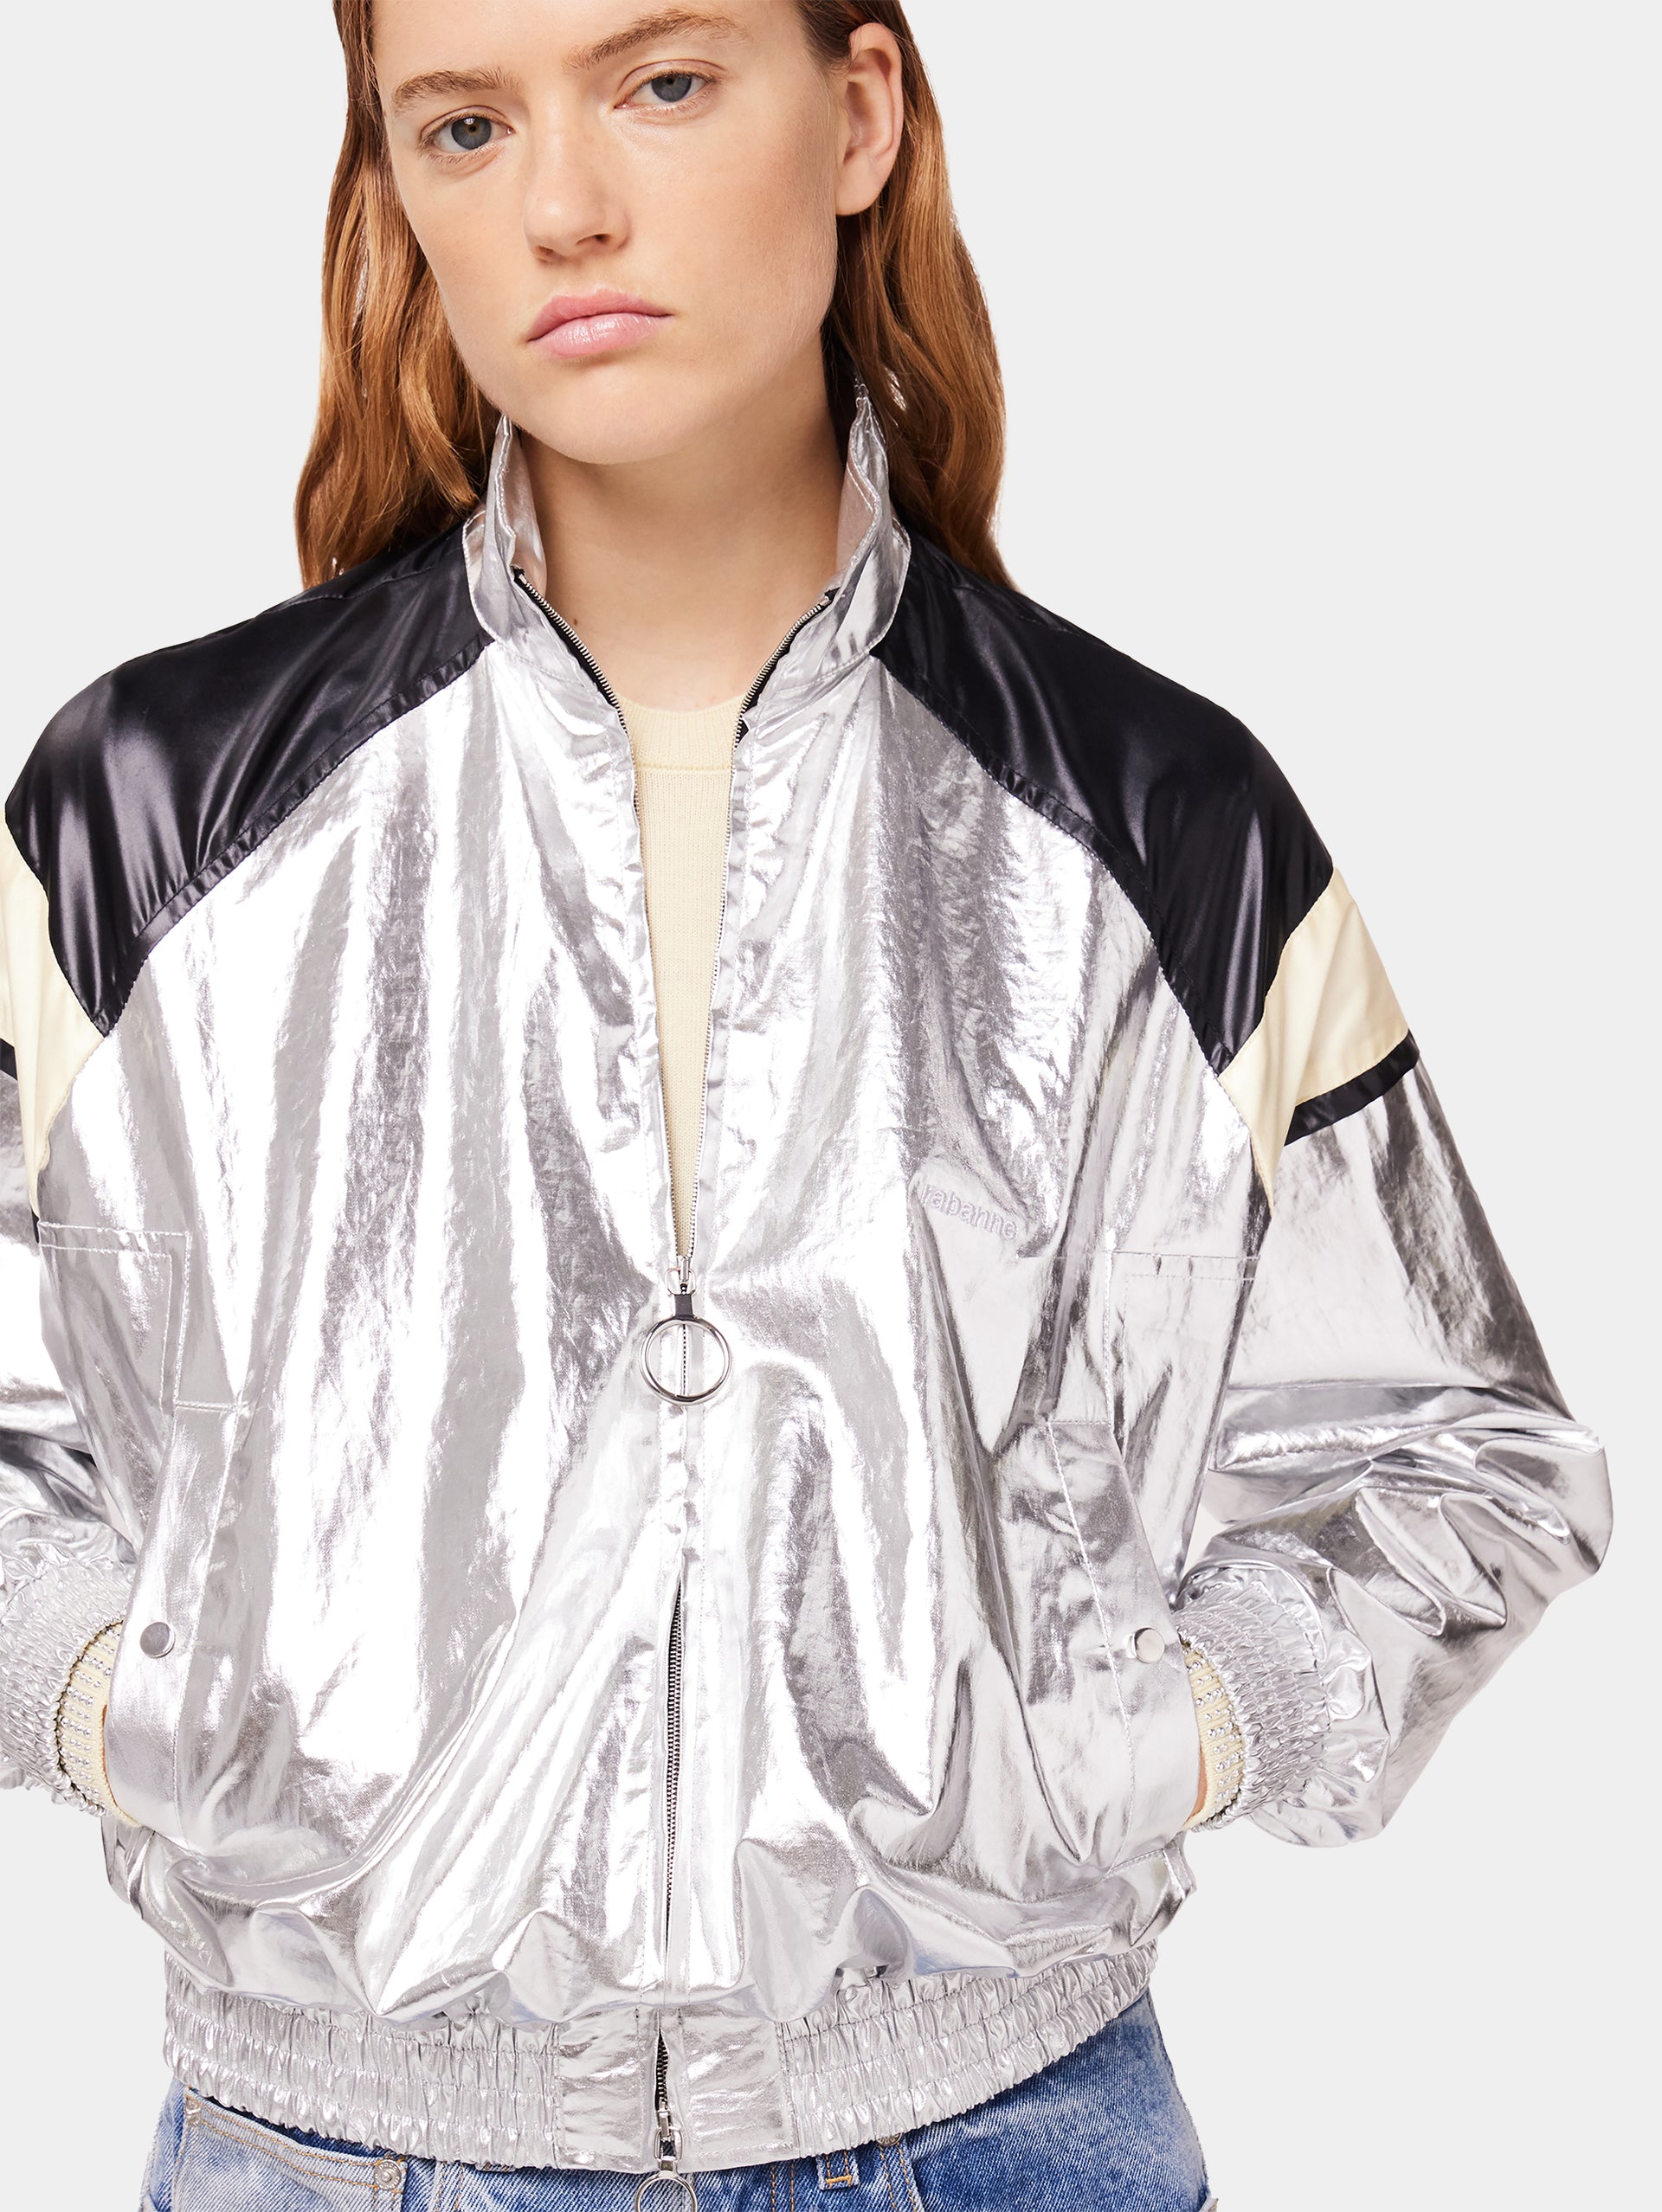 Silver turtleneck jacket